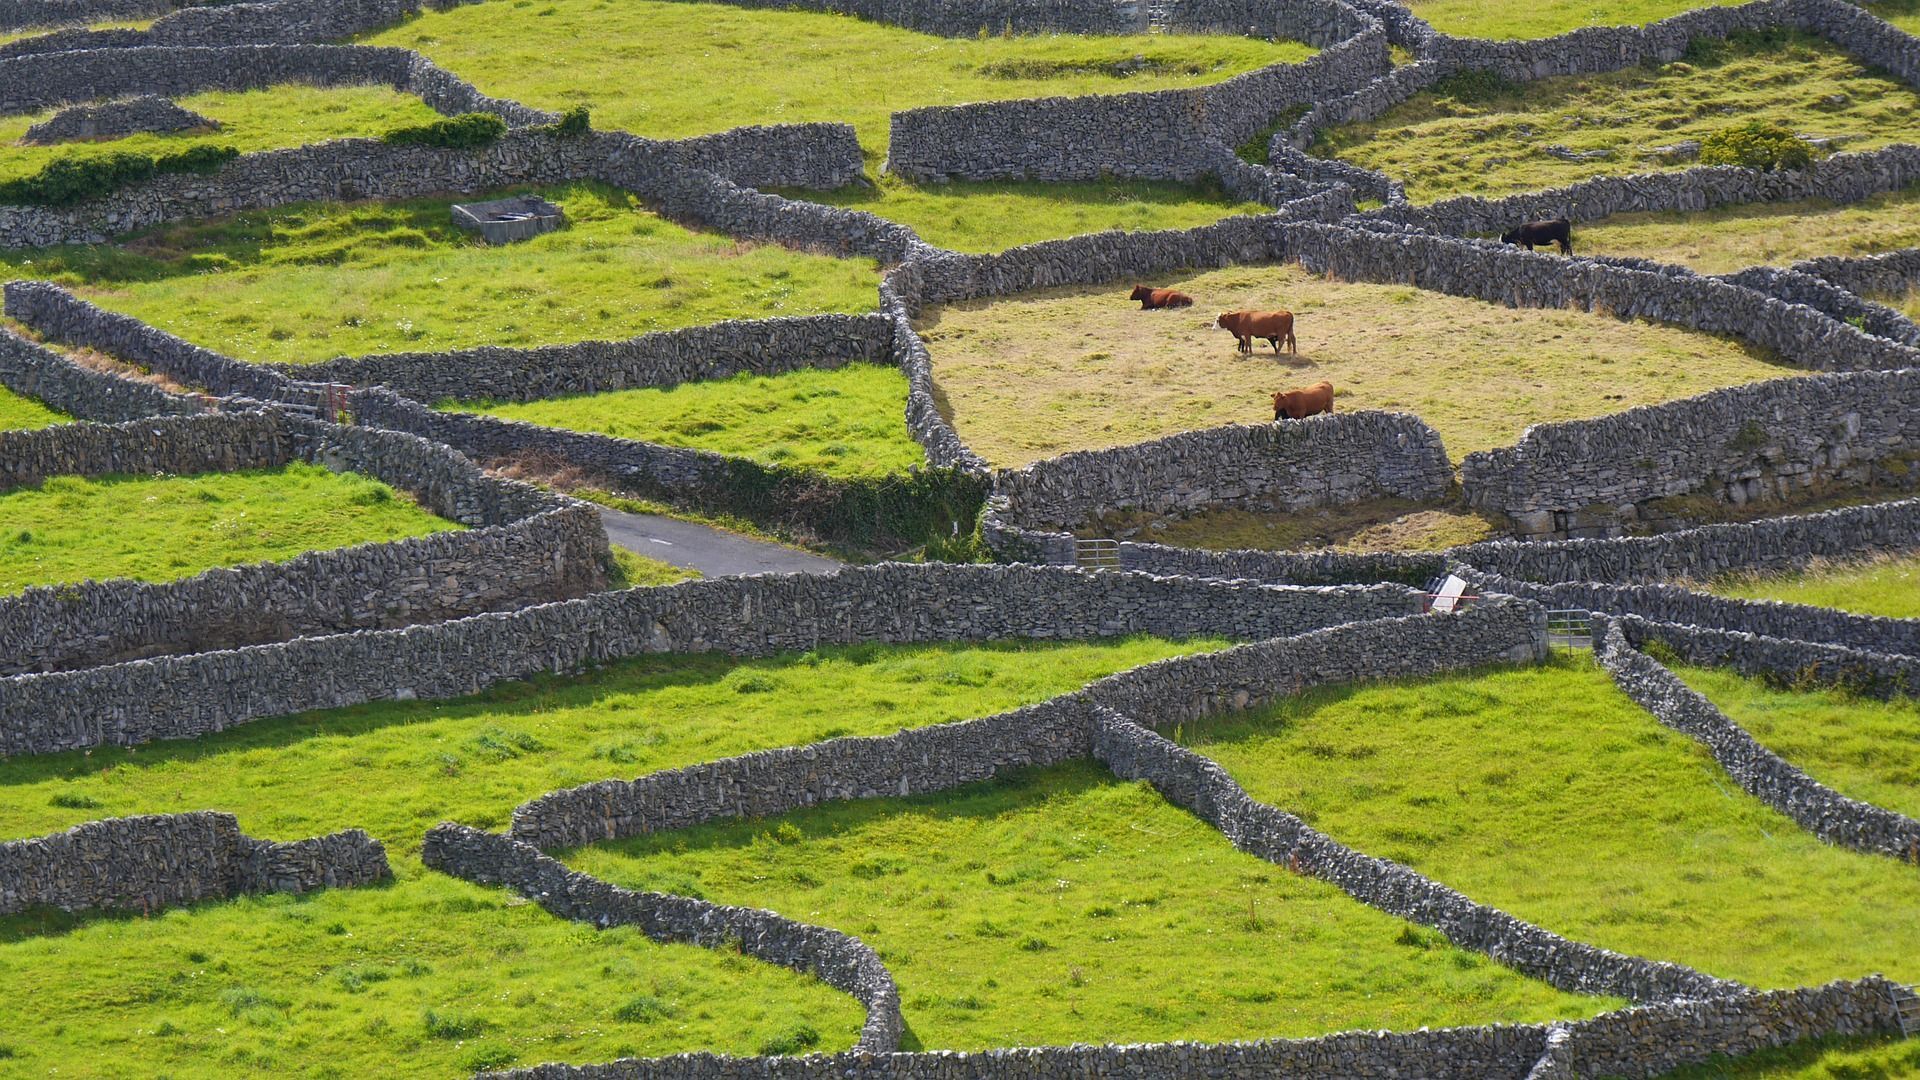 Schüleraustausch Irland grüne Wiesen mit Steinmauern und Kühen